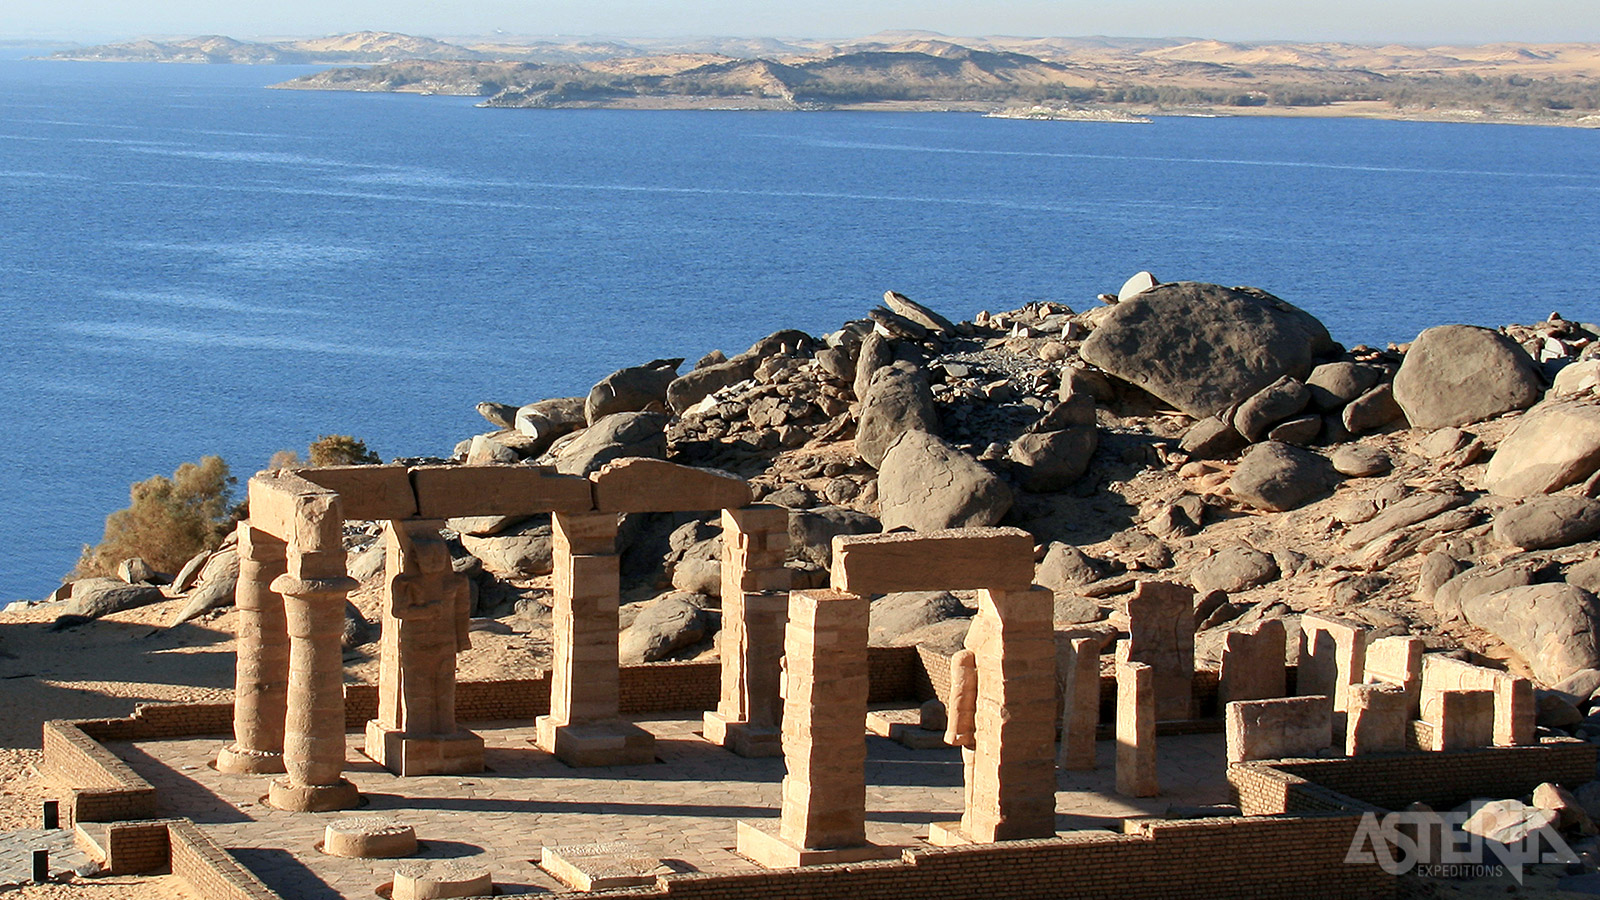 Vanwege de bouw van de Aswan stuwdam werd de Kalabsha tempel in 1970 verzaagd en stuk per stuk naar zijn huidige plaats op het eiland New Kalabasha verplaatst